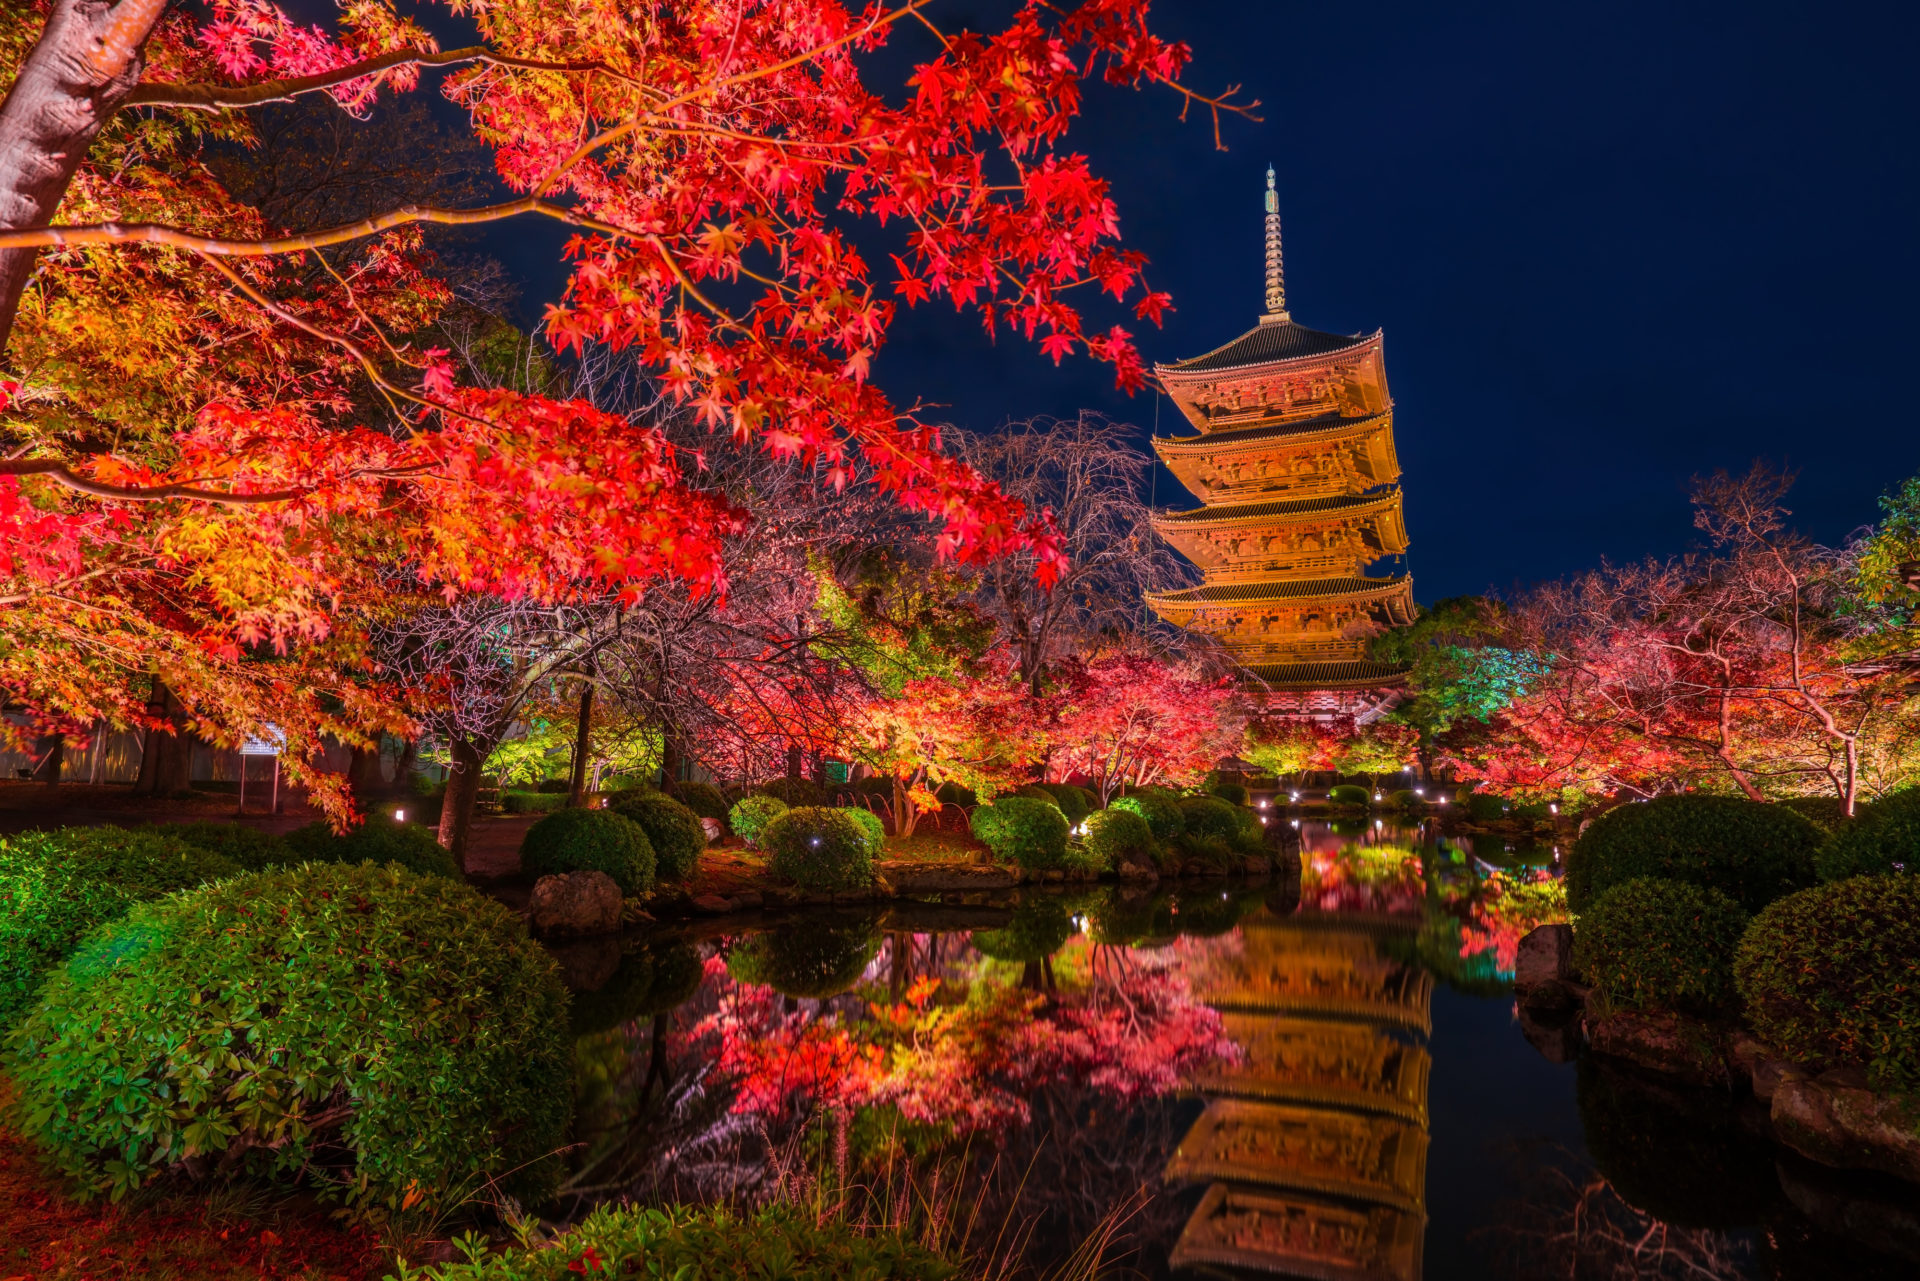 まるで鏡 境目がわからない程の京都の紅葉の美しさ Caedekyoto カエデ京都 紅葉と伝統美を引き継ぐバッグ